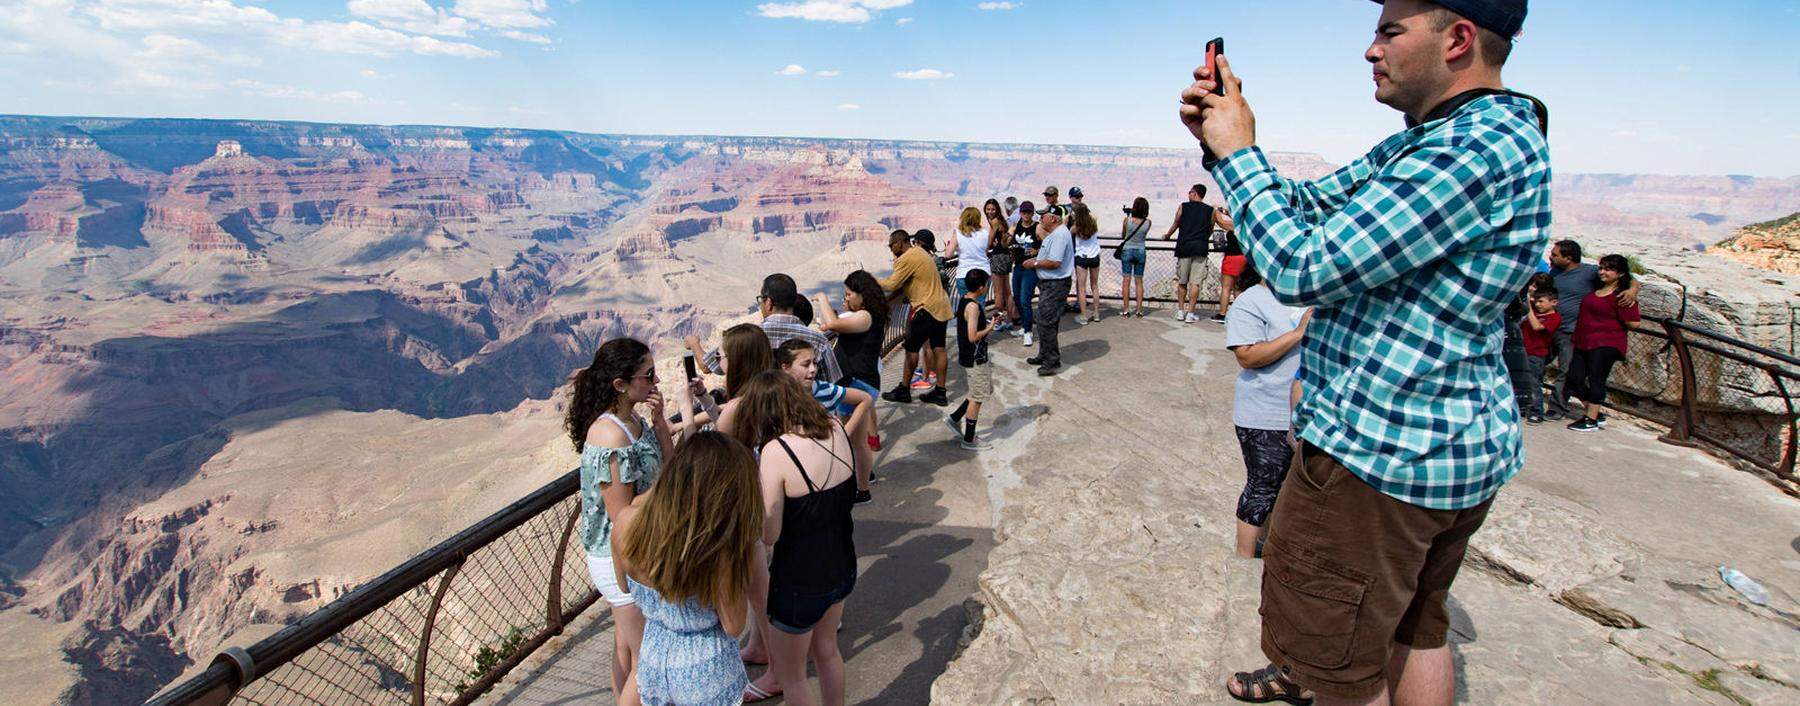 Menschen am Grand View Point beim Selfie machen American Way of live Amerika Arizona Colorado Pl